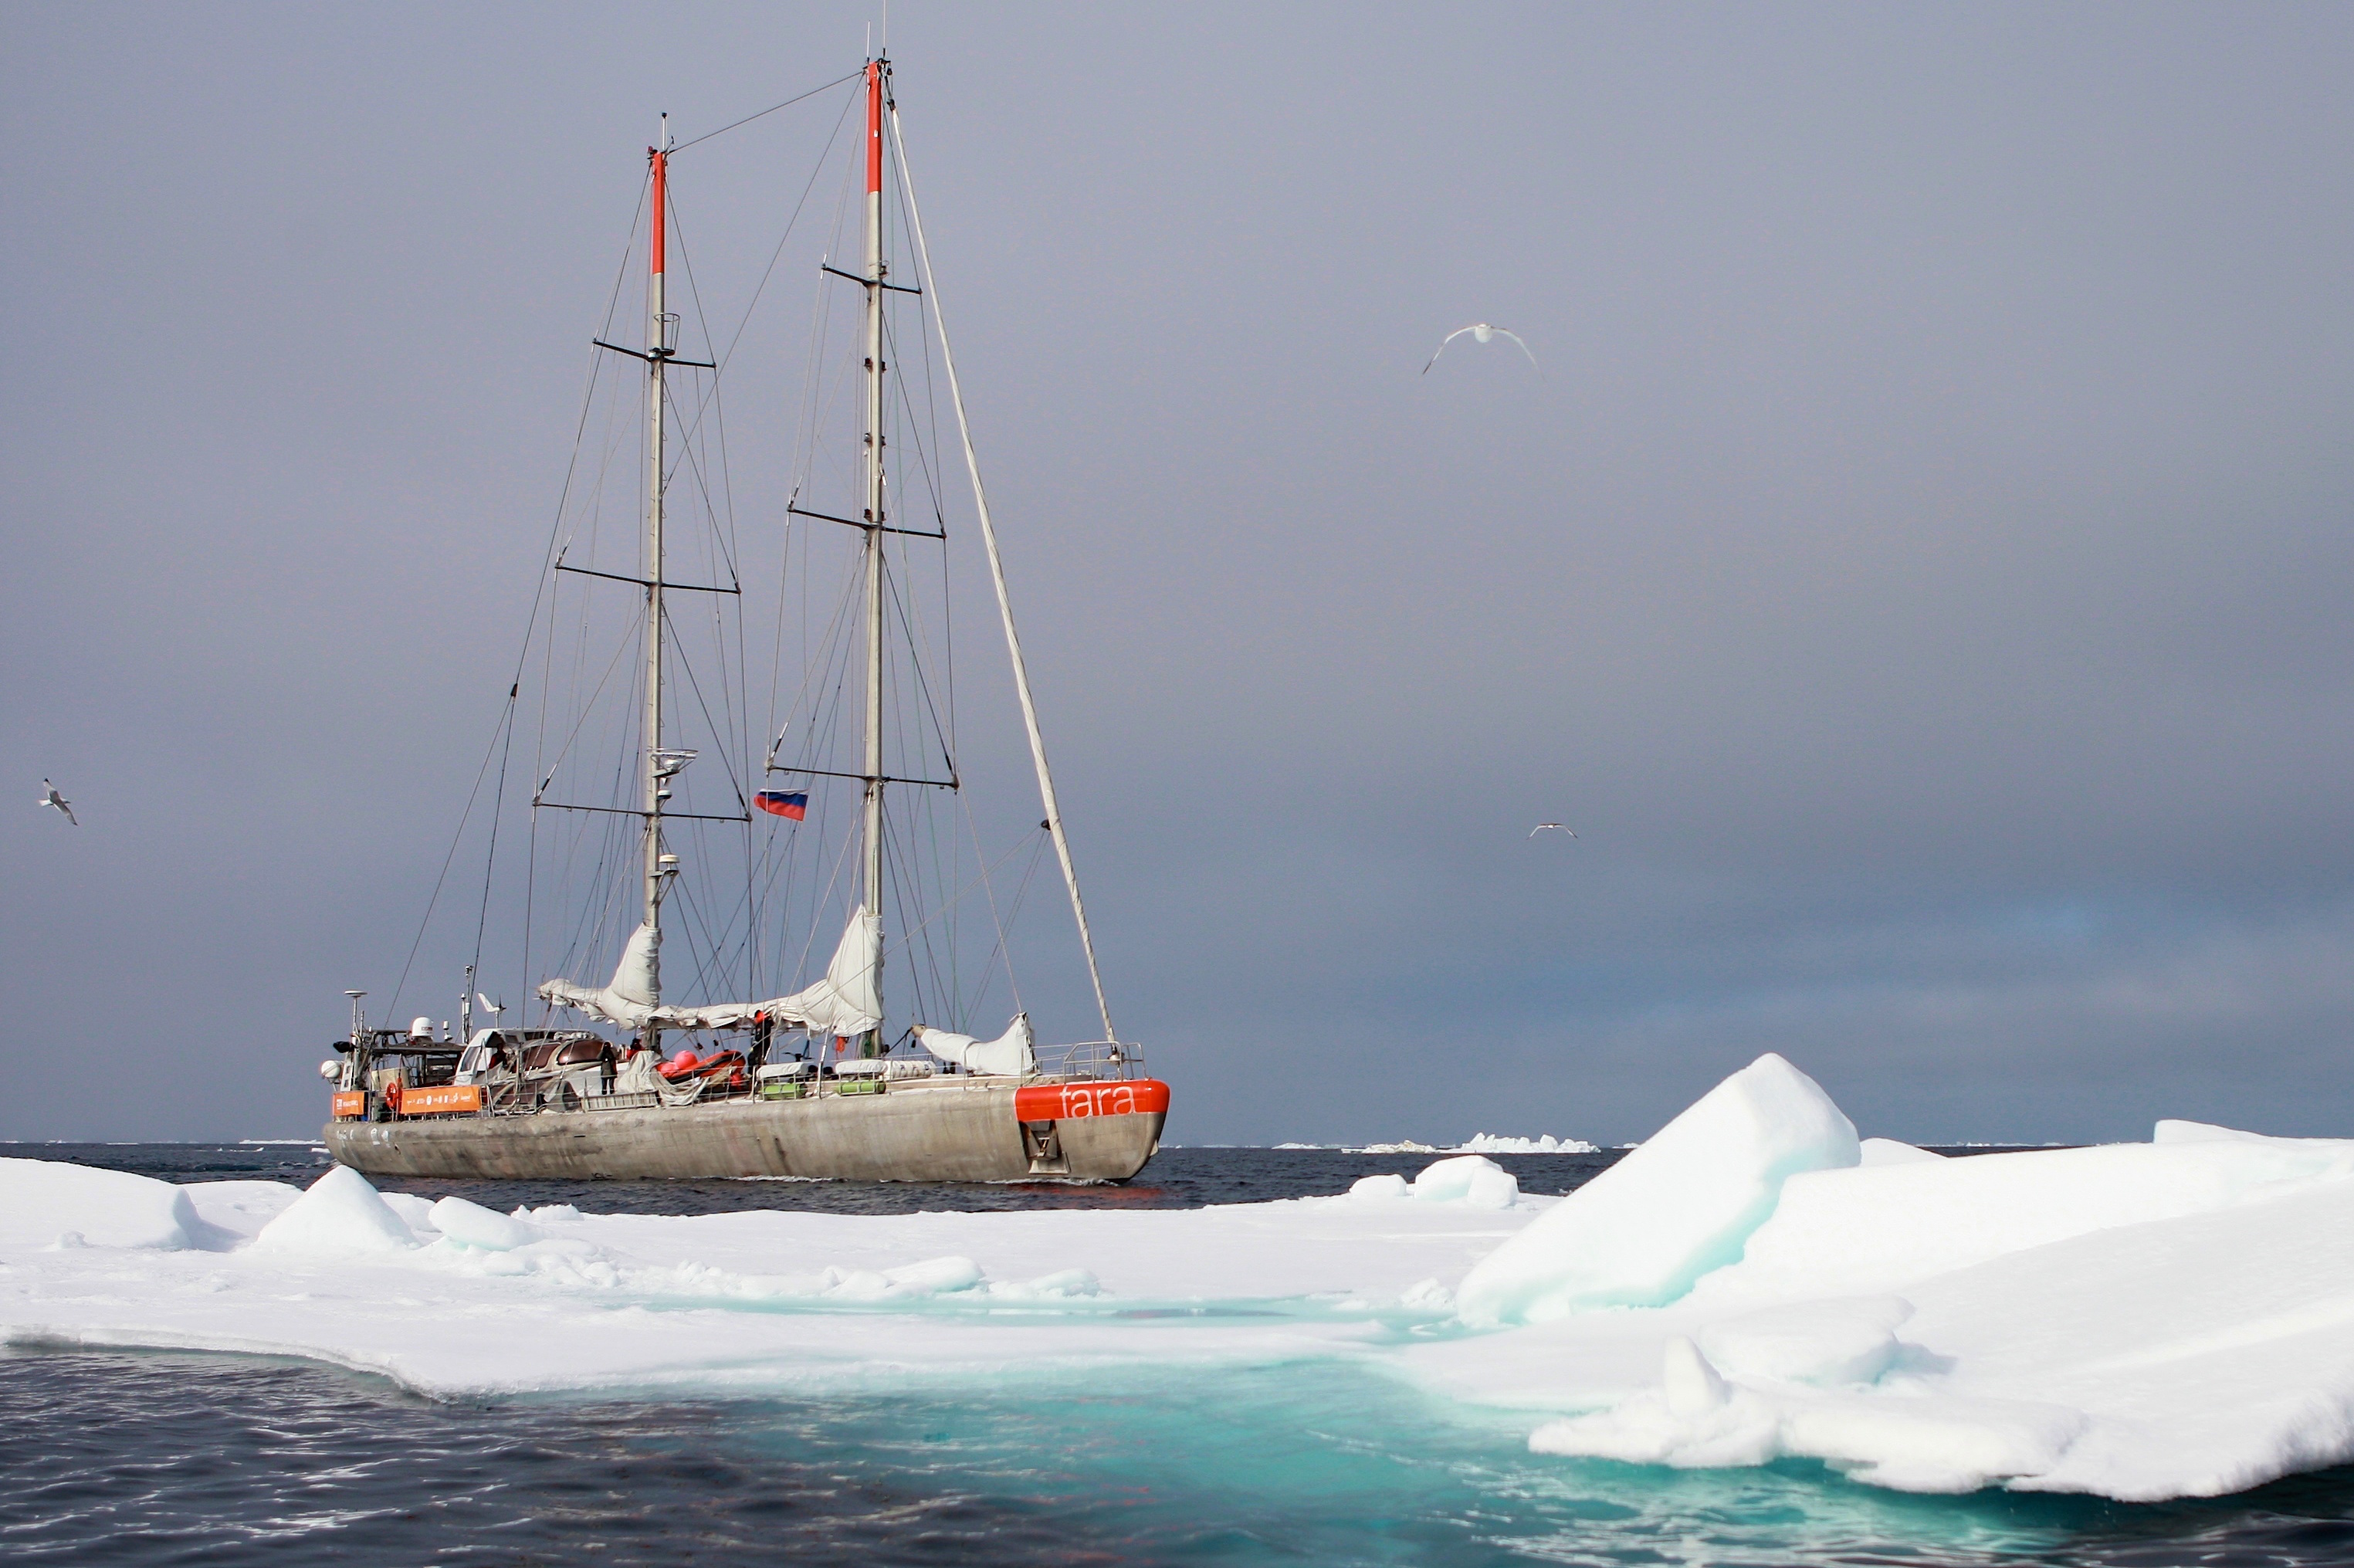 Les expéditions dans les régions polaires ont particulièrement "marqué" François Aurat © A.DeniaudGarcia - TaraExpeditions